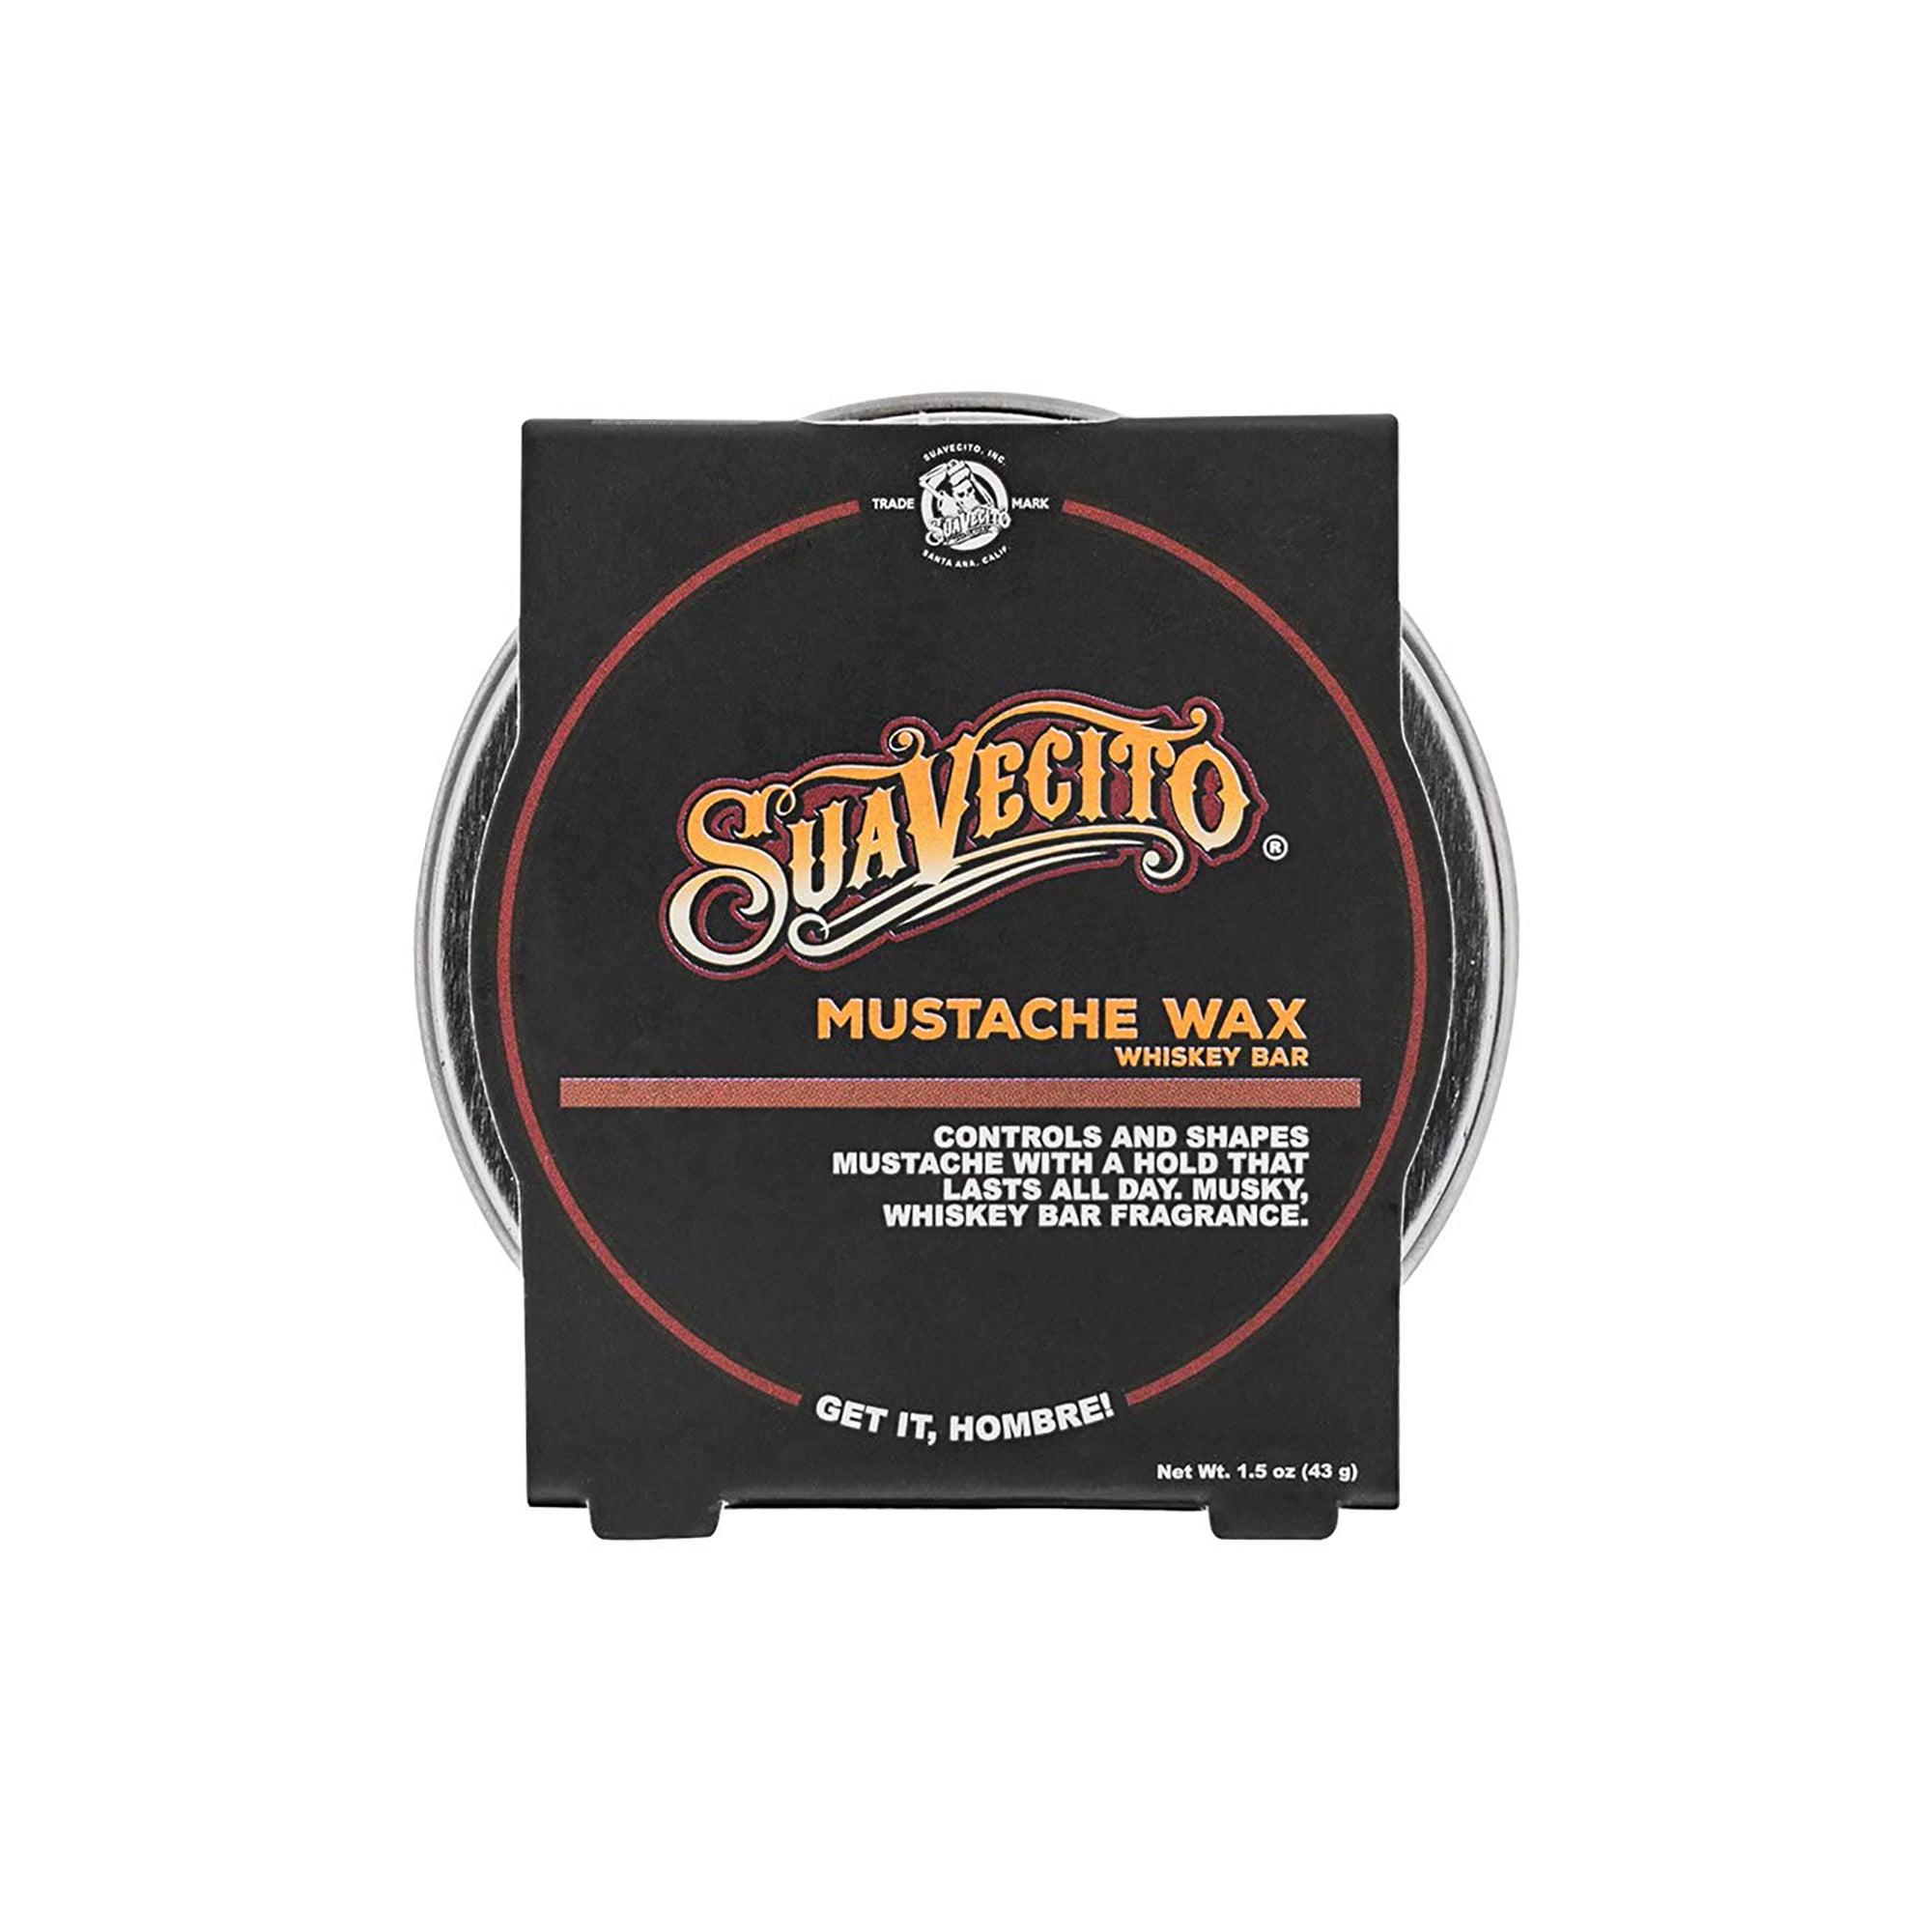 Suavecito Mustache Wax / Whiskey Bar Scent